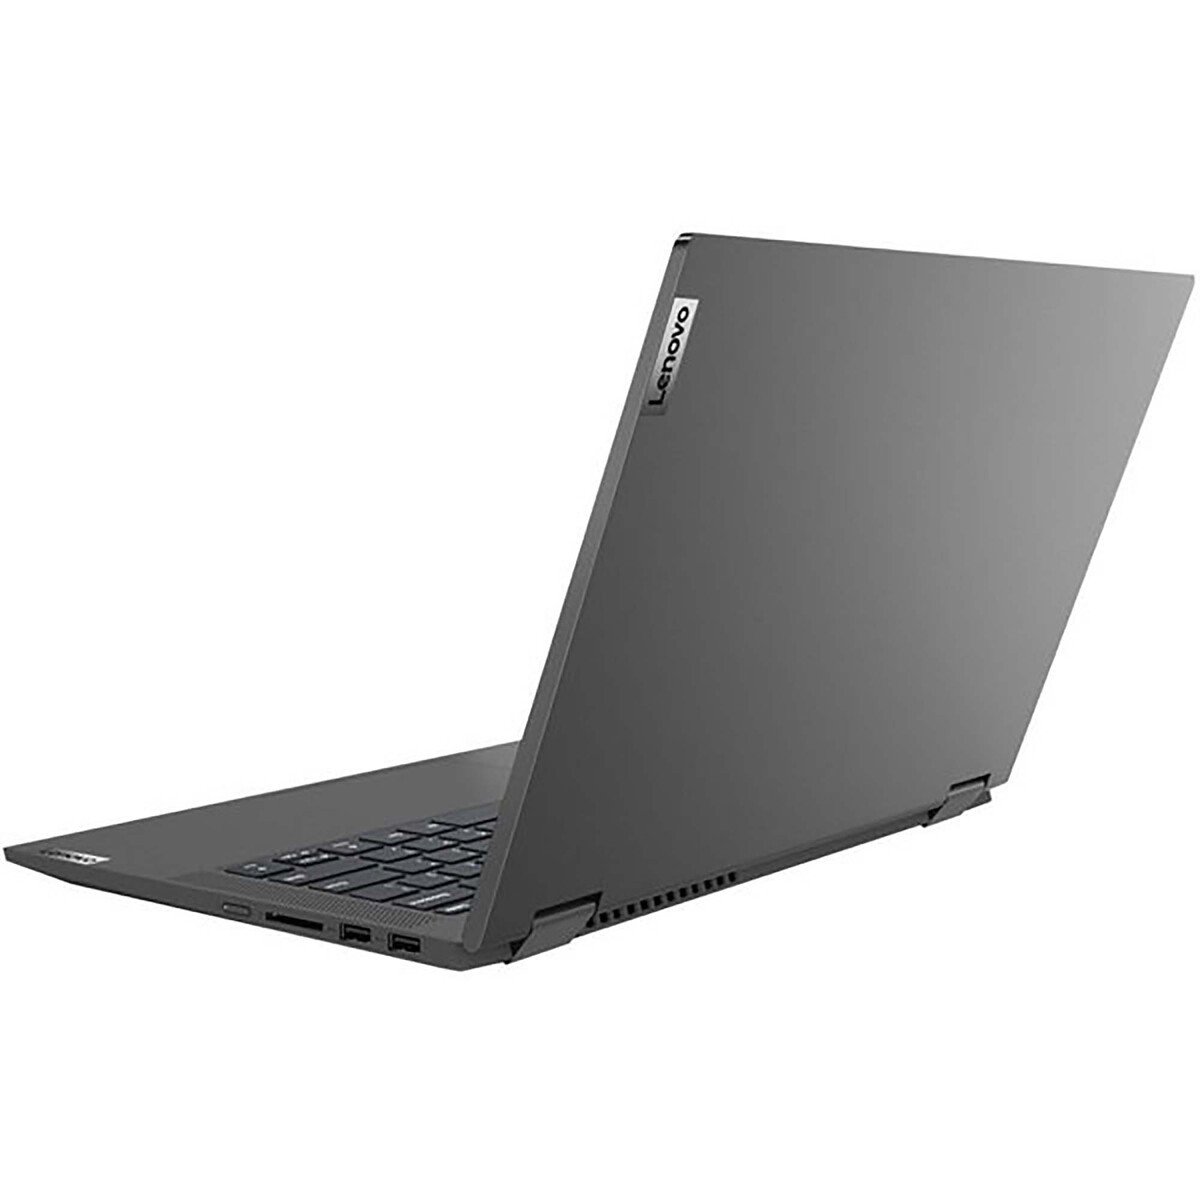 Lenovo IdeaPad Flex 5,2in1 Notebook(82HS00TTAX),Intel Core i5-1135G7,8GB RAM,512GB SSD, 14.0"FHD,Windows 11,Graphite Grey,English-Arabic Keyboard